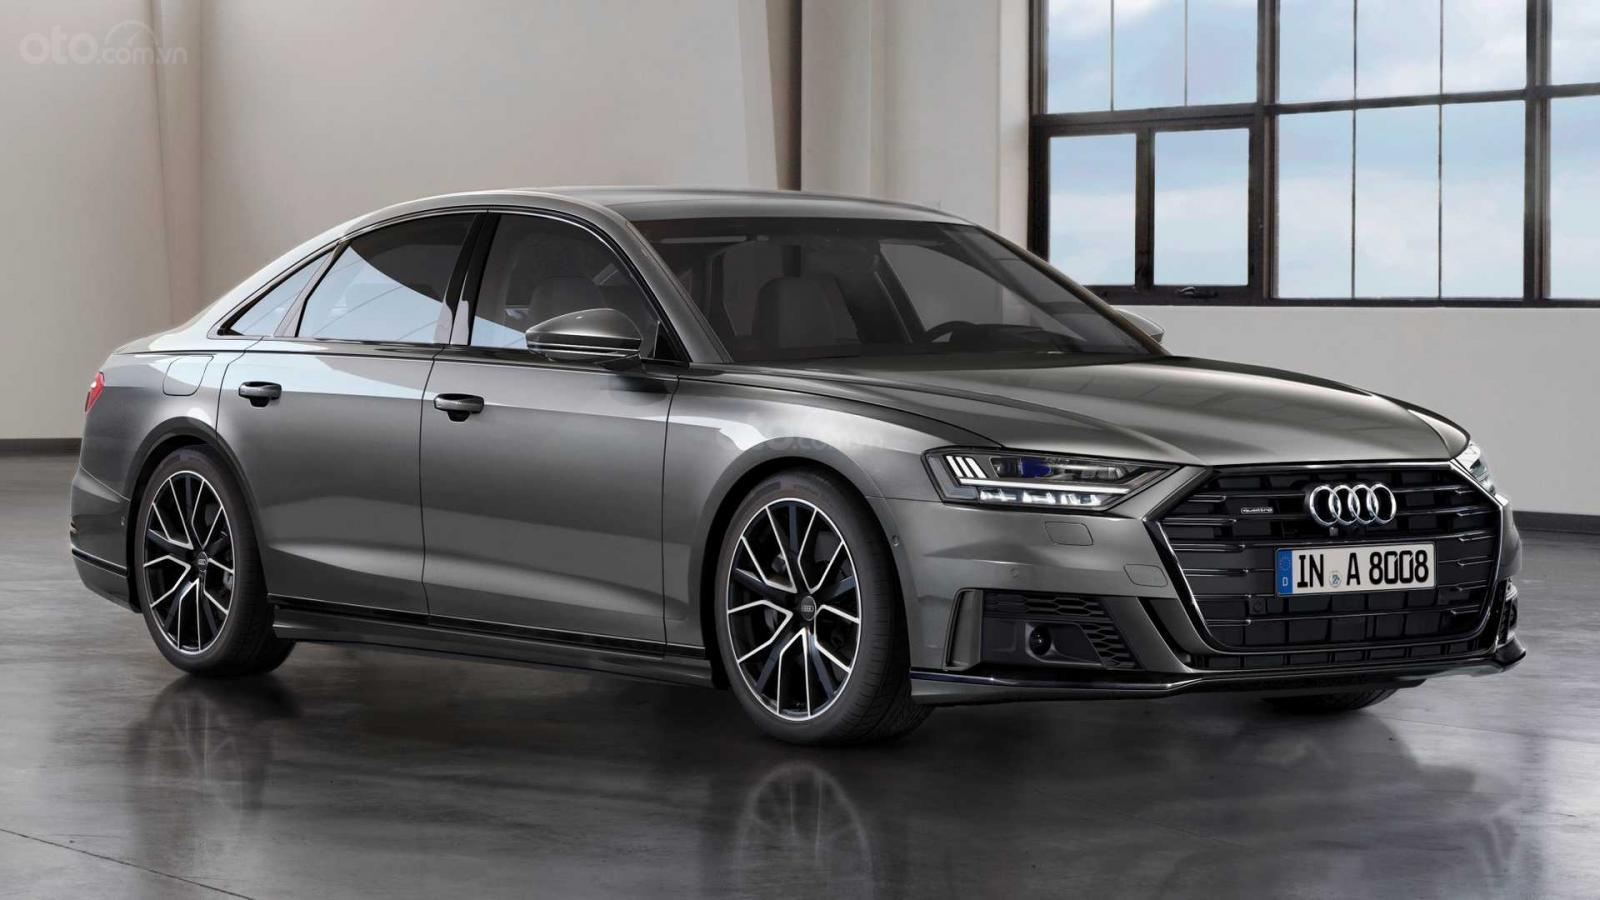 ‘Soi’ hệ thống treo thông minh giúp hạn chế tình trạng lật xe trên Audi A8